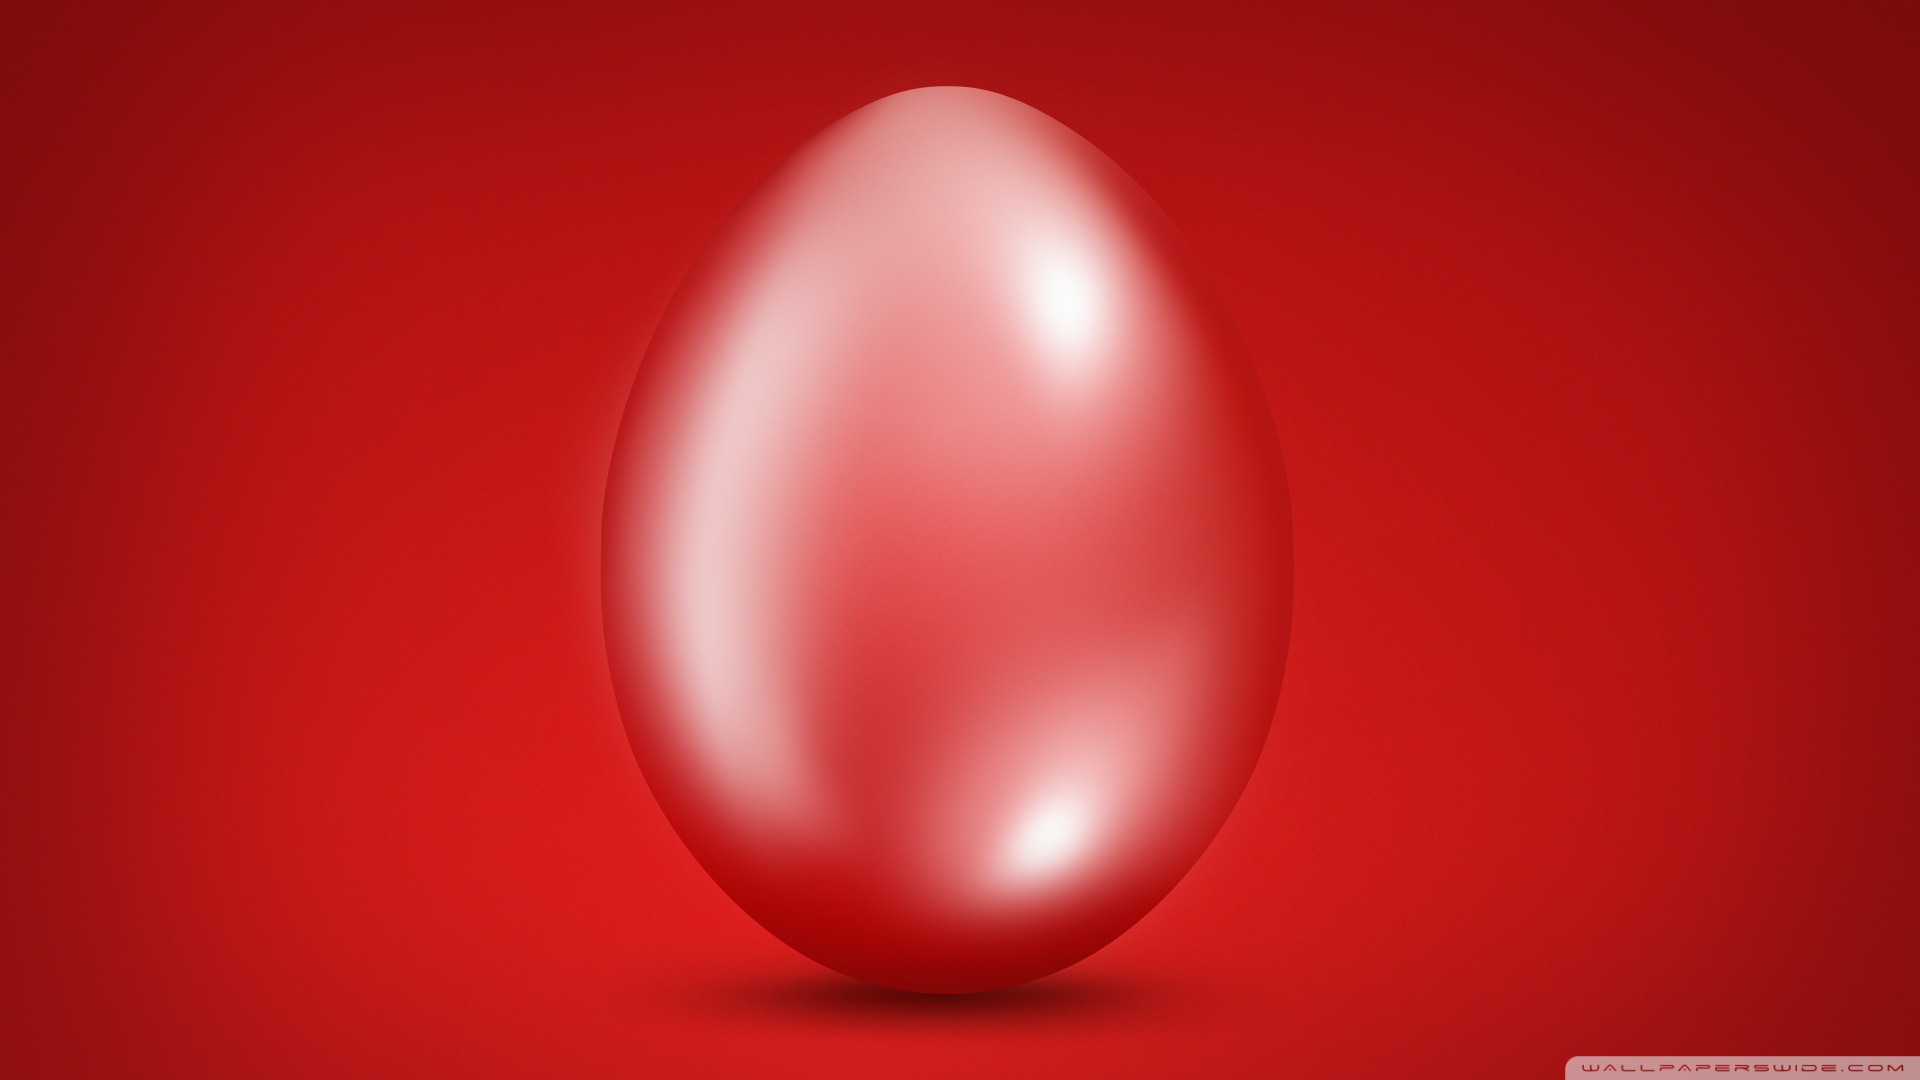 Big Red Easter Egg Wallpaper 1920×1080 1